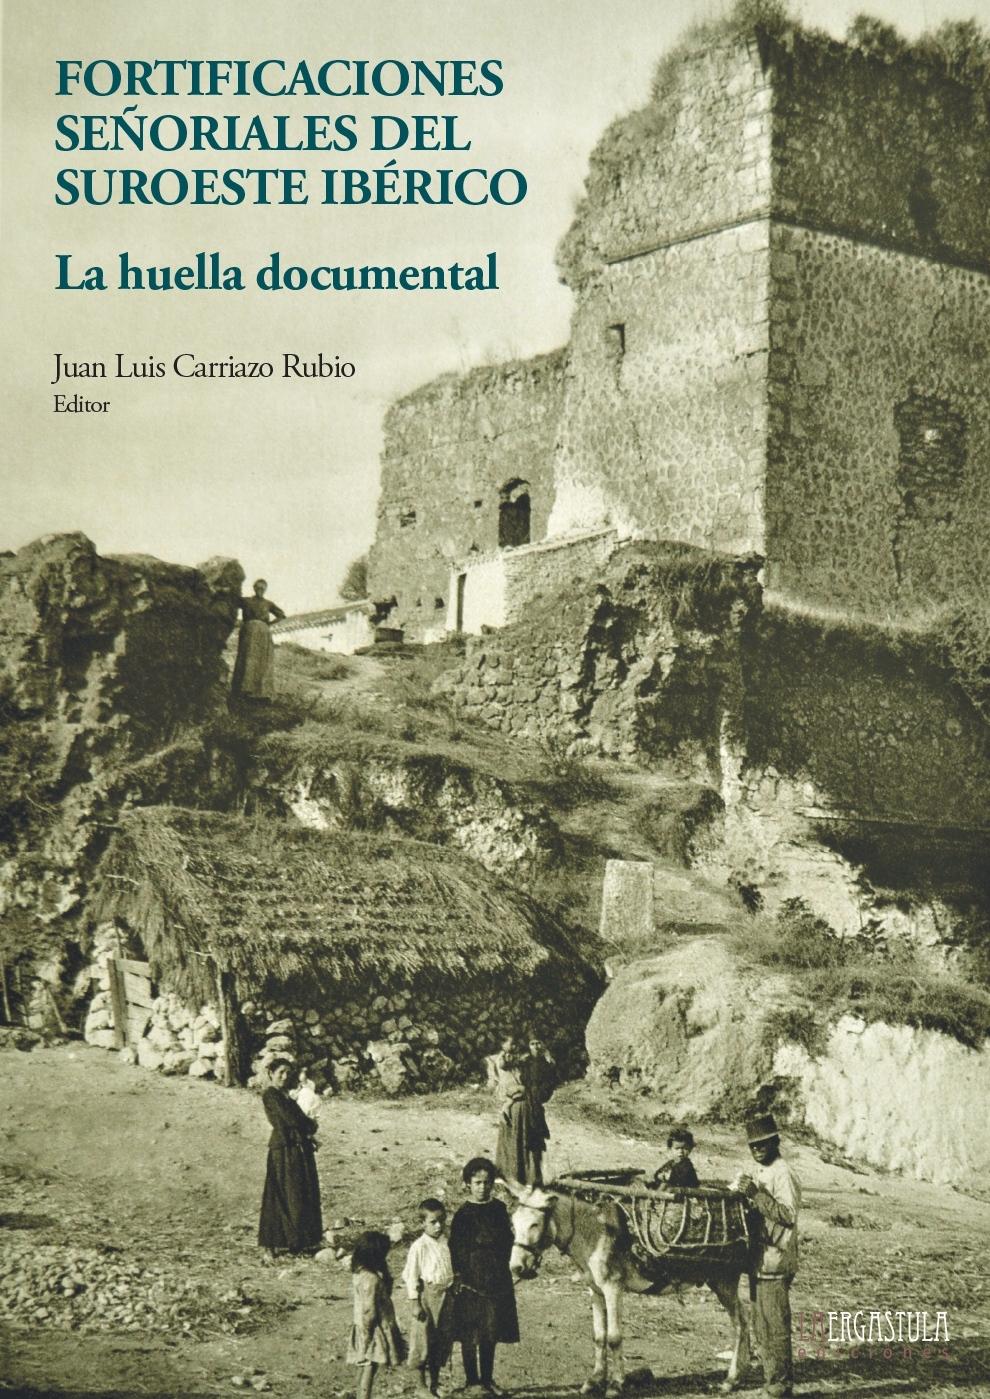 Imagen de portada del libro Fortificaciones señoriales del suroeste ibérico